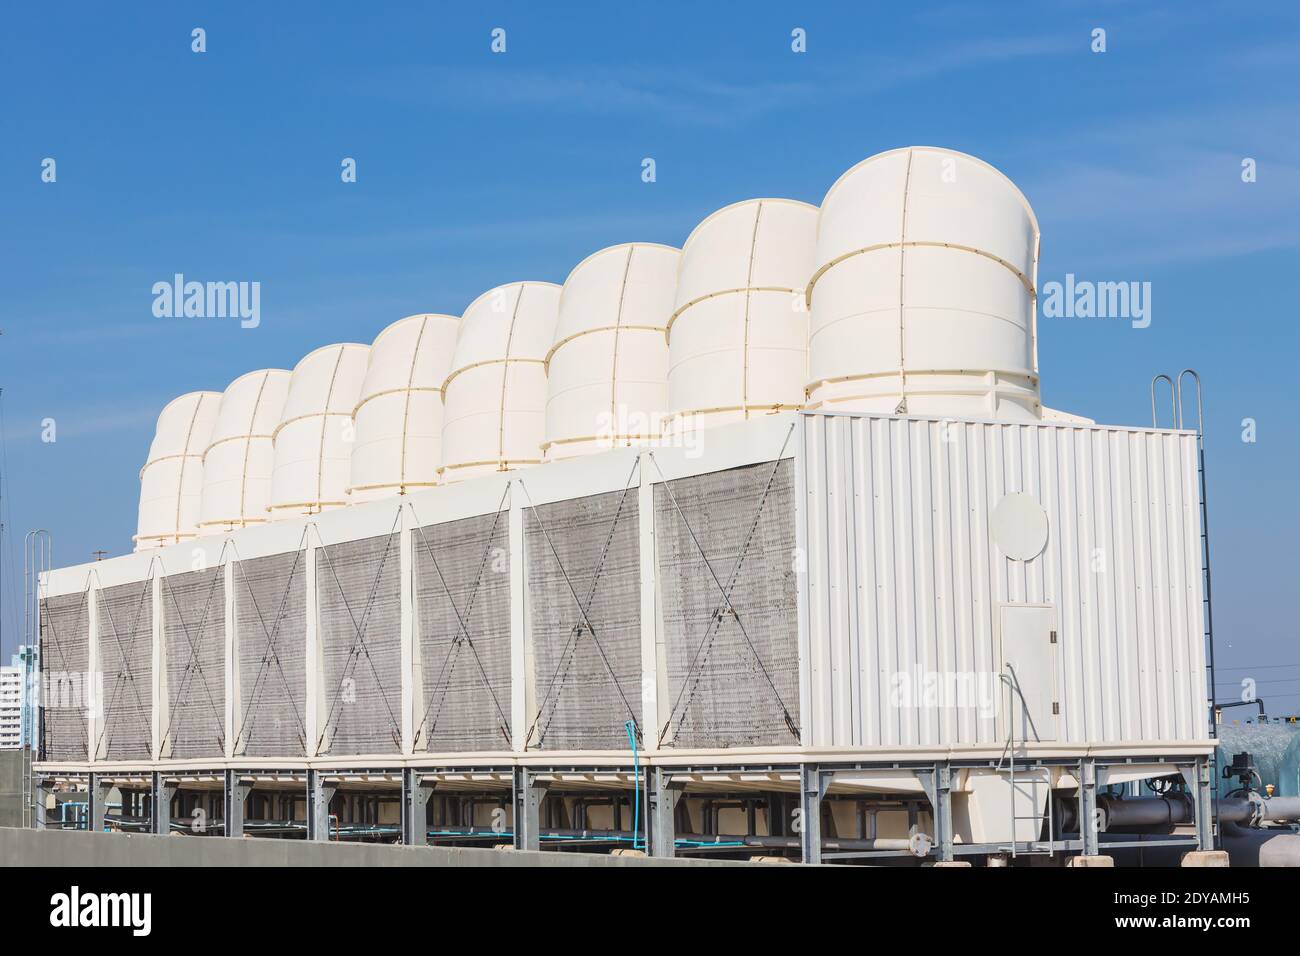 Luftkühlturm für HLK-Kühlgeräte am Dach des Gebäudes mit blauem Himmel. Stockfoto